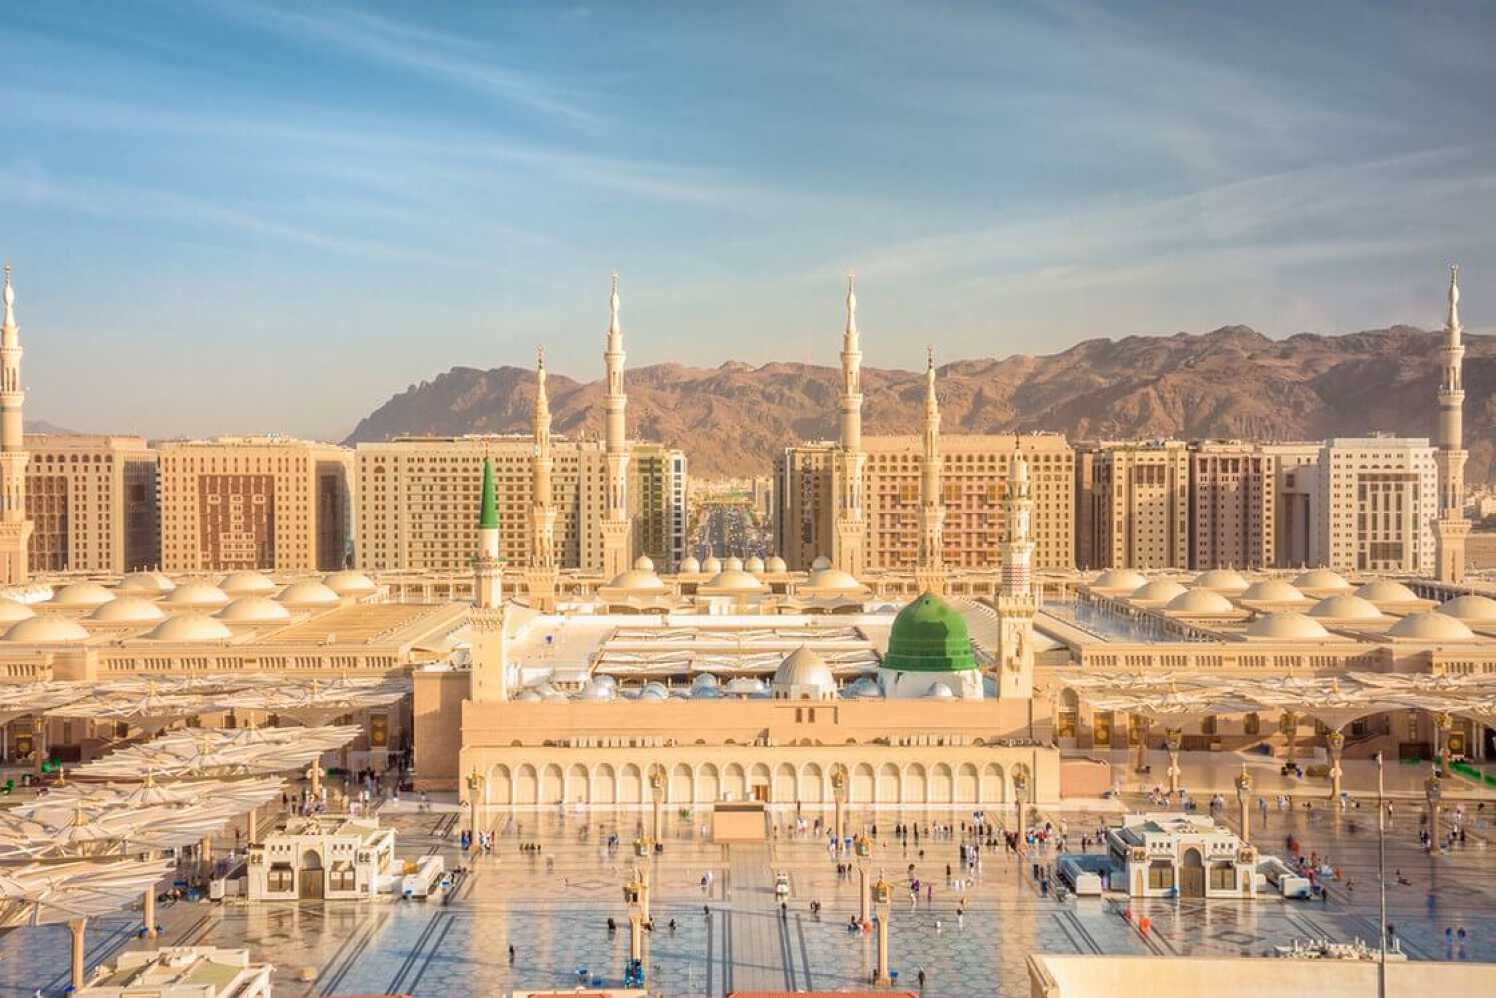 Al-Masjid an-Nabawi (mosquée du prophète) dans la ville de Médine, en Arabie saoudite.